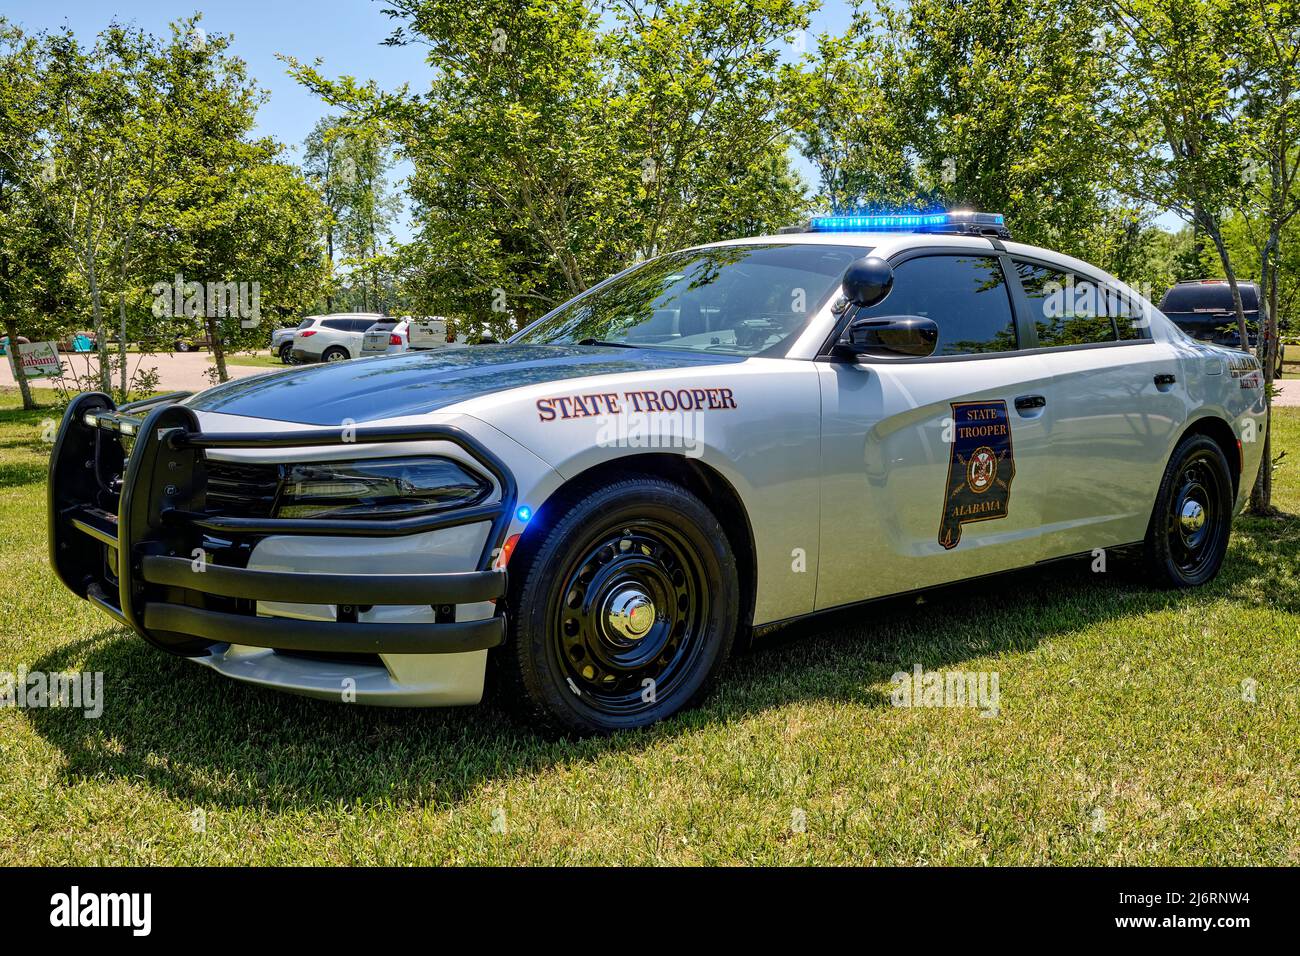 Alabama State Trooper véhicule de police ou véhicule de police, Dodge Charger, exposé à Montgomery Alabama, États-Unis. Banque D'Images